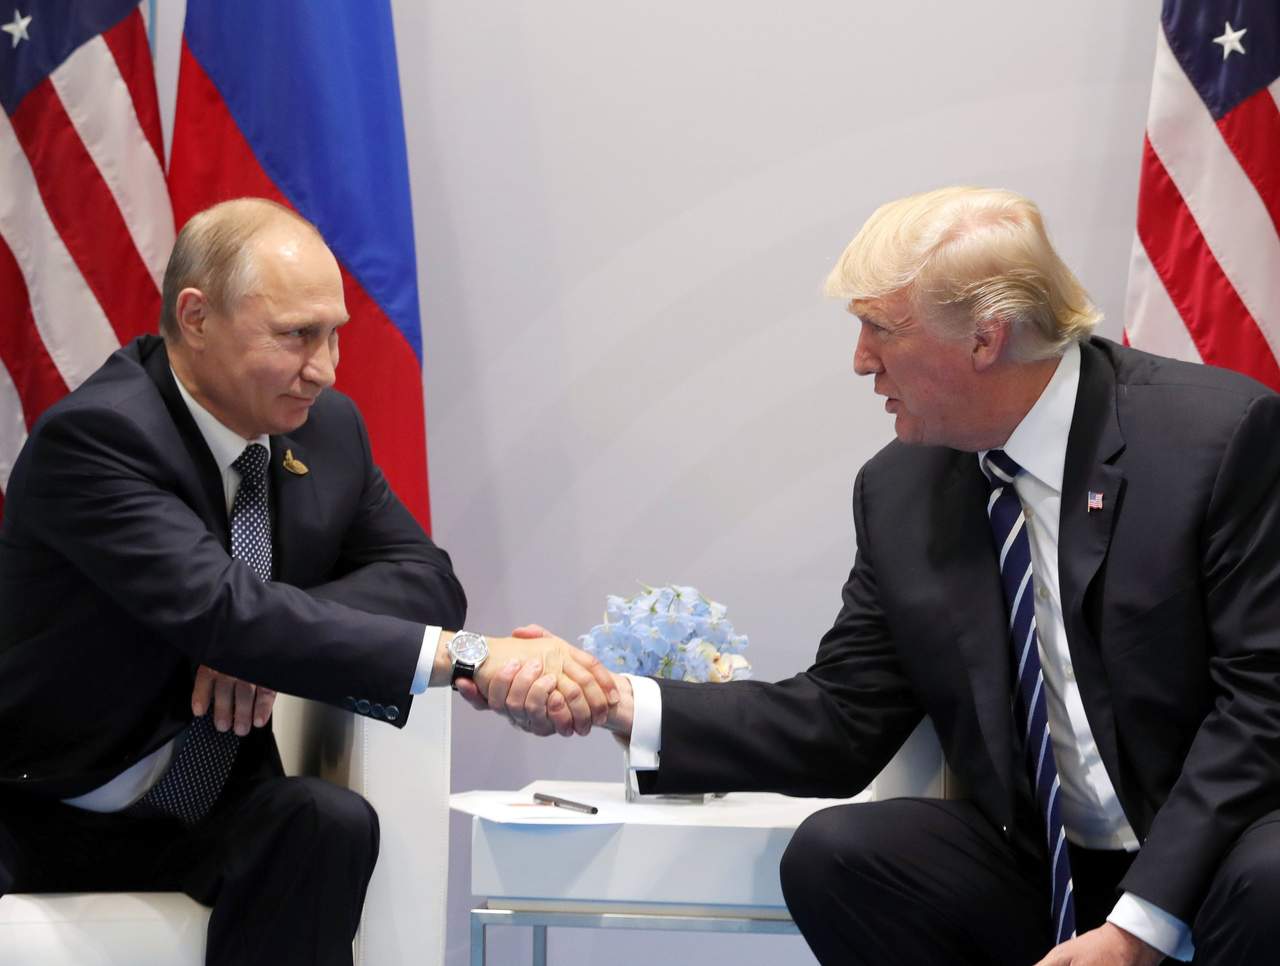 La reanudación del diálogo ocurre menos de dos semanas después de que el presidente Donald Trump y el presidente ruso Vladimir Putin celebraron su primer encuentro en persona, que ambas partes calificaron de un buen comienzo para reparar las relaciones. (ARCHIVO)